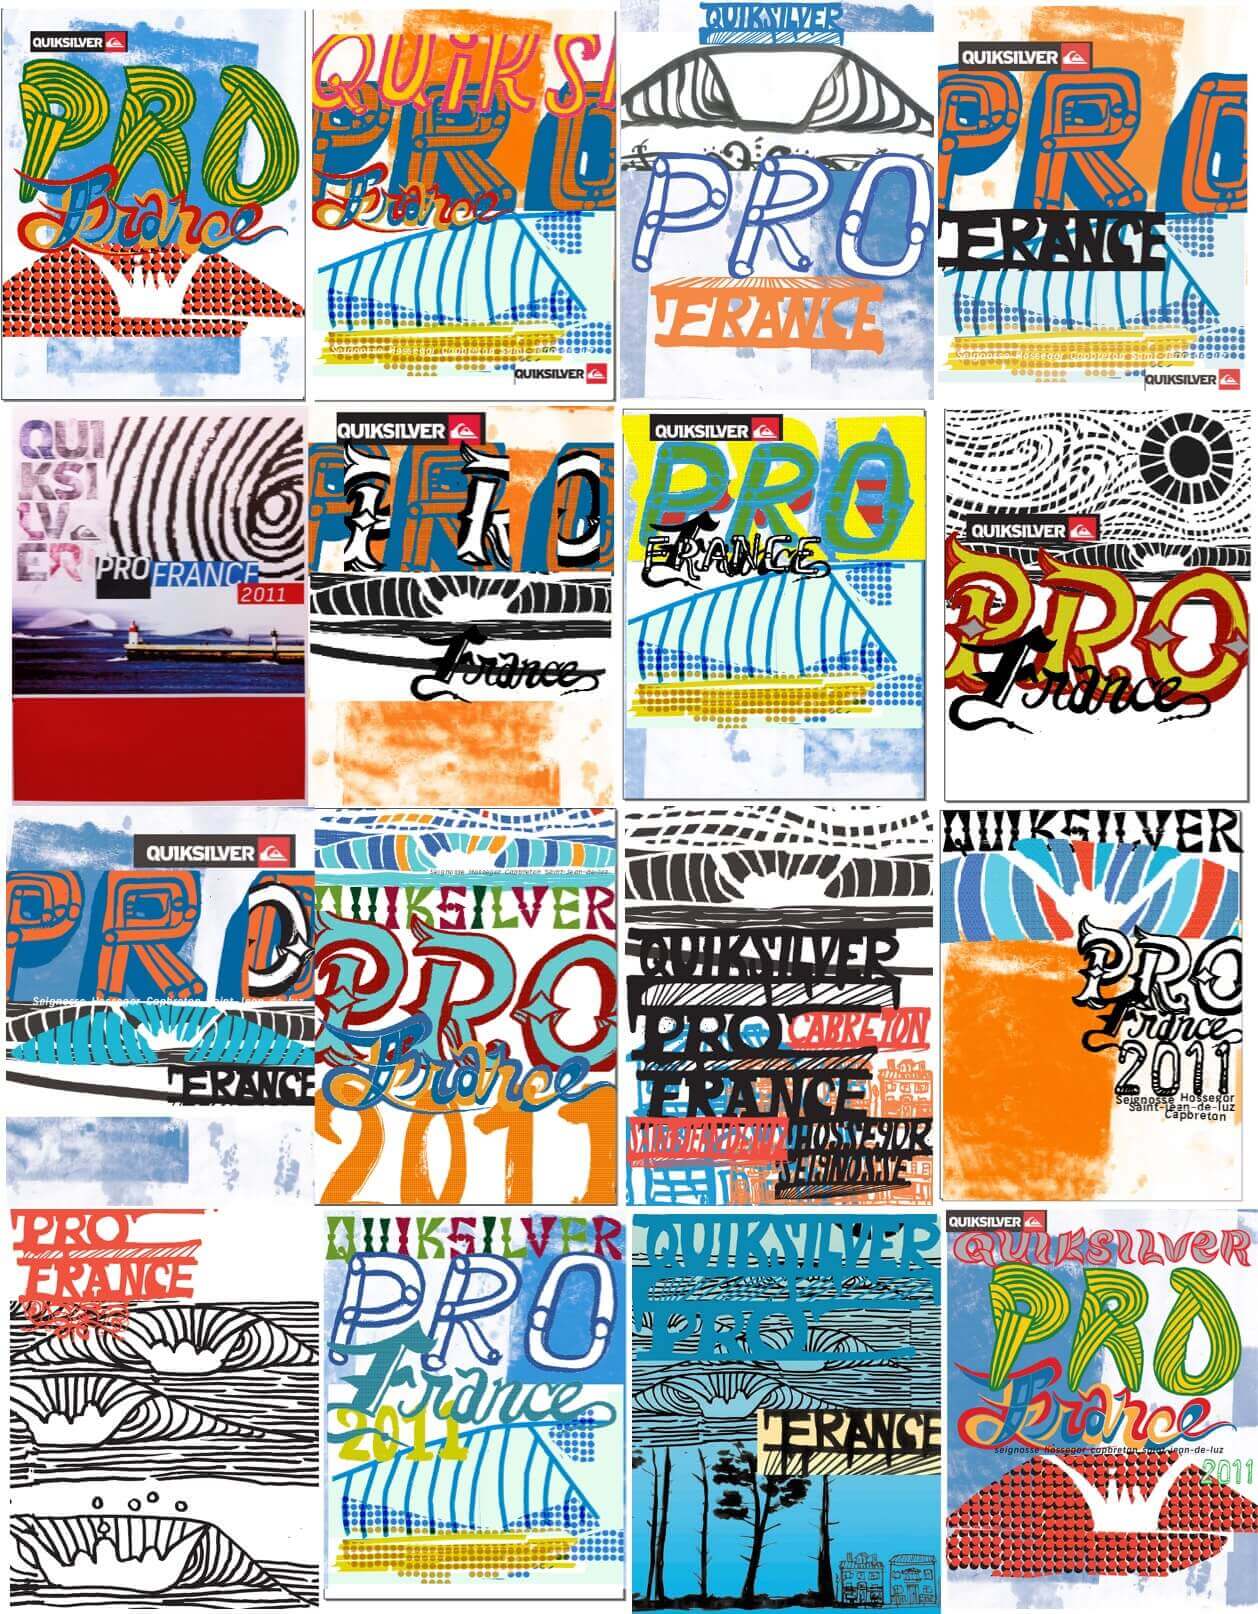 Quiksilver Pro France 2011 concepts